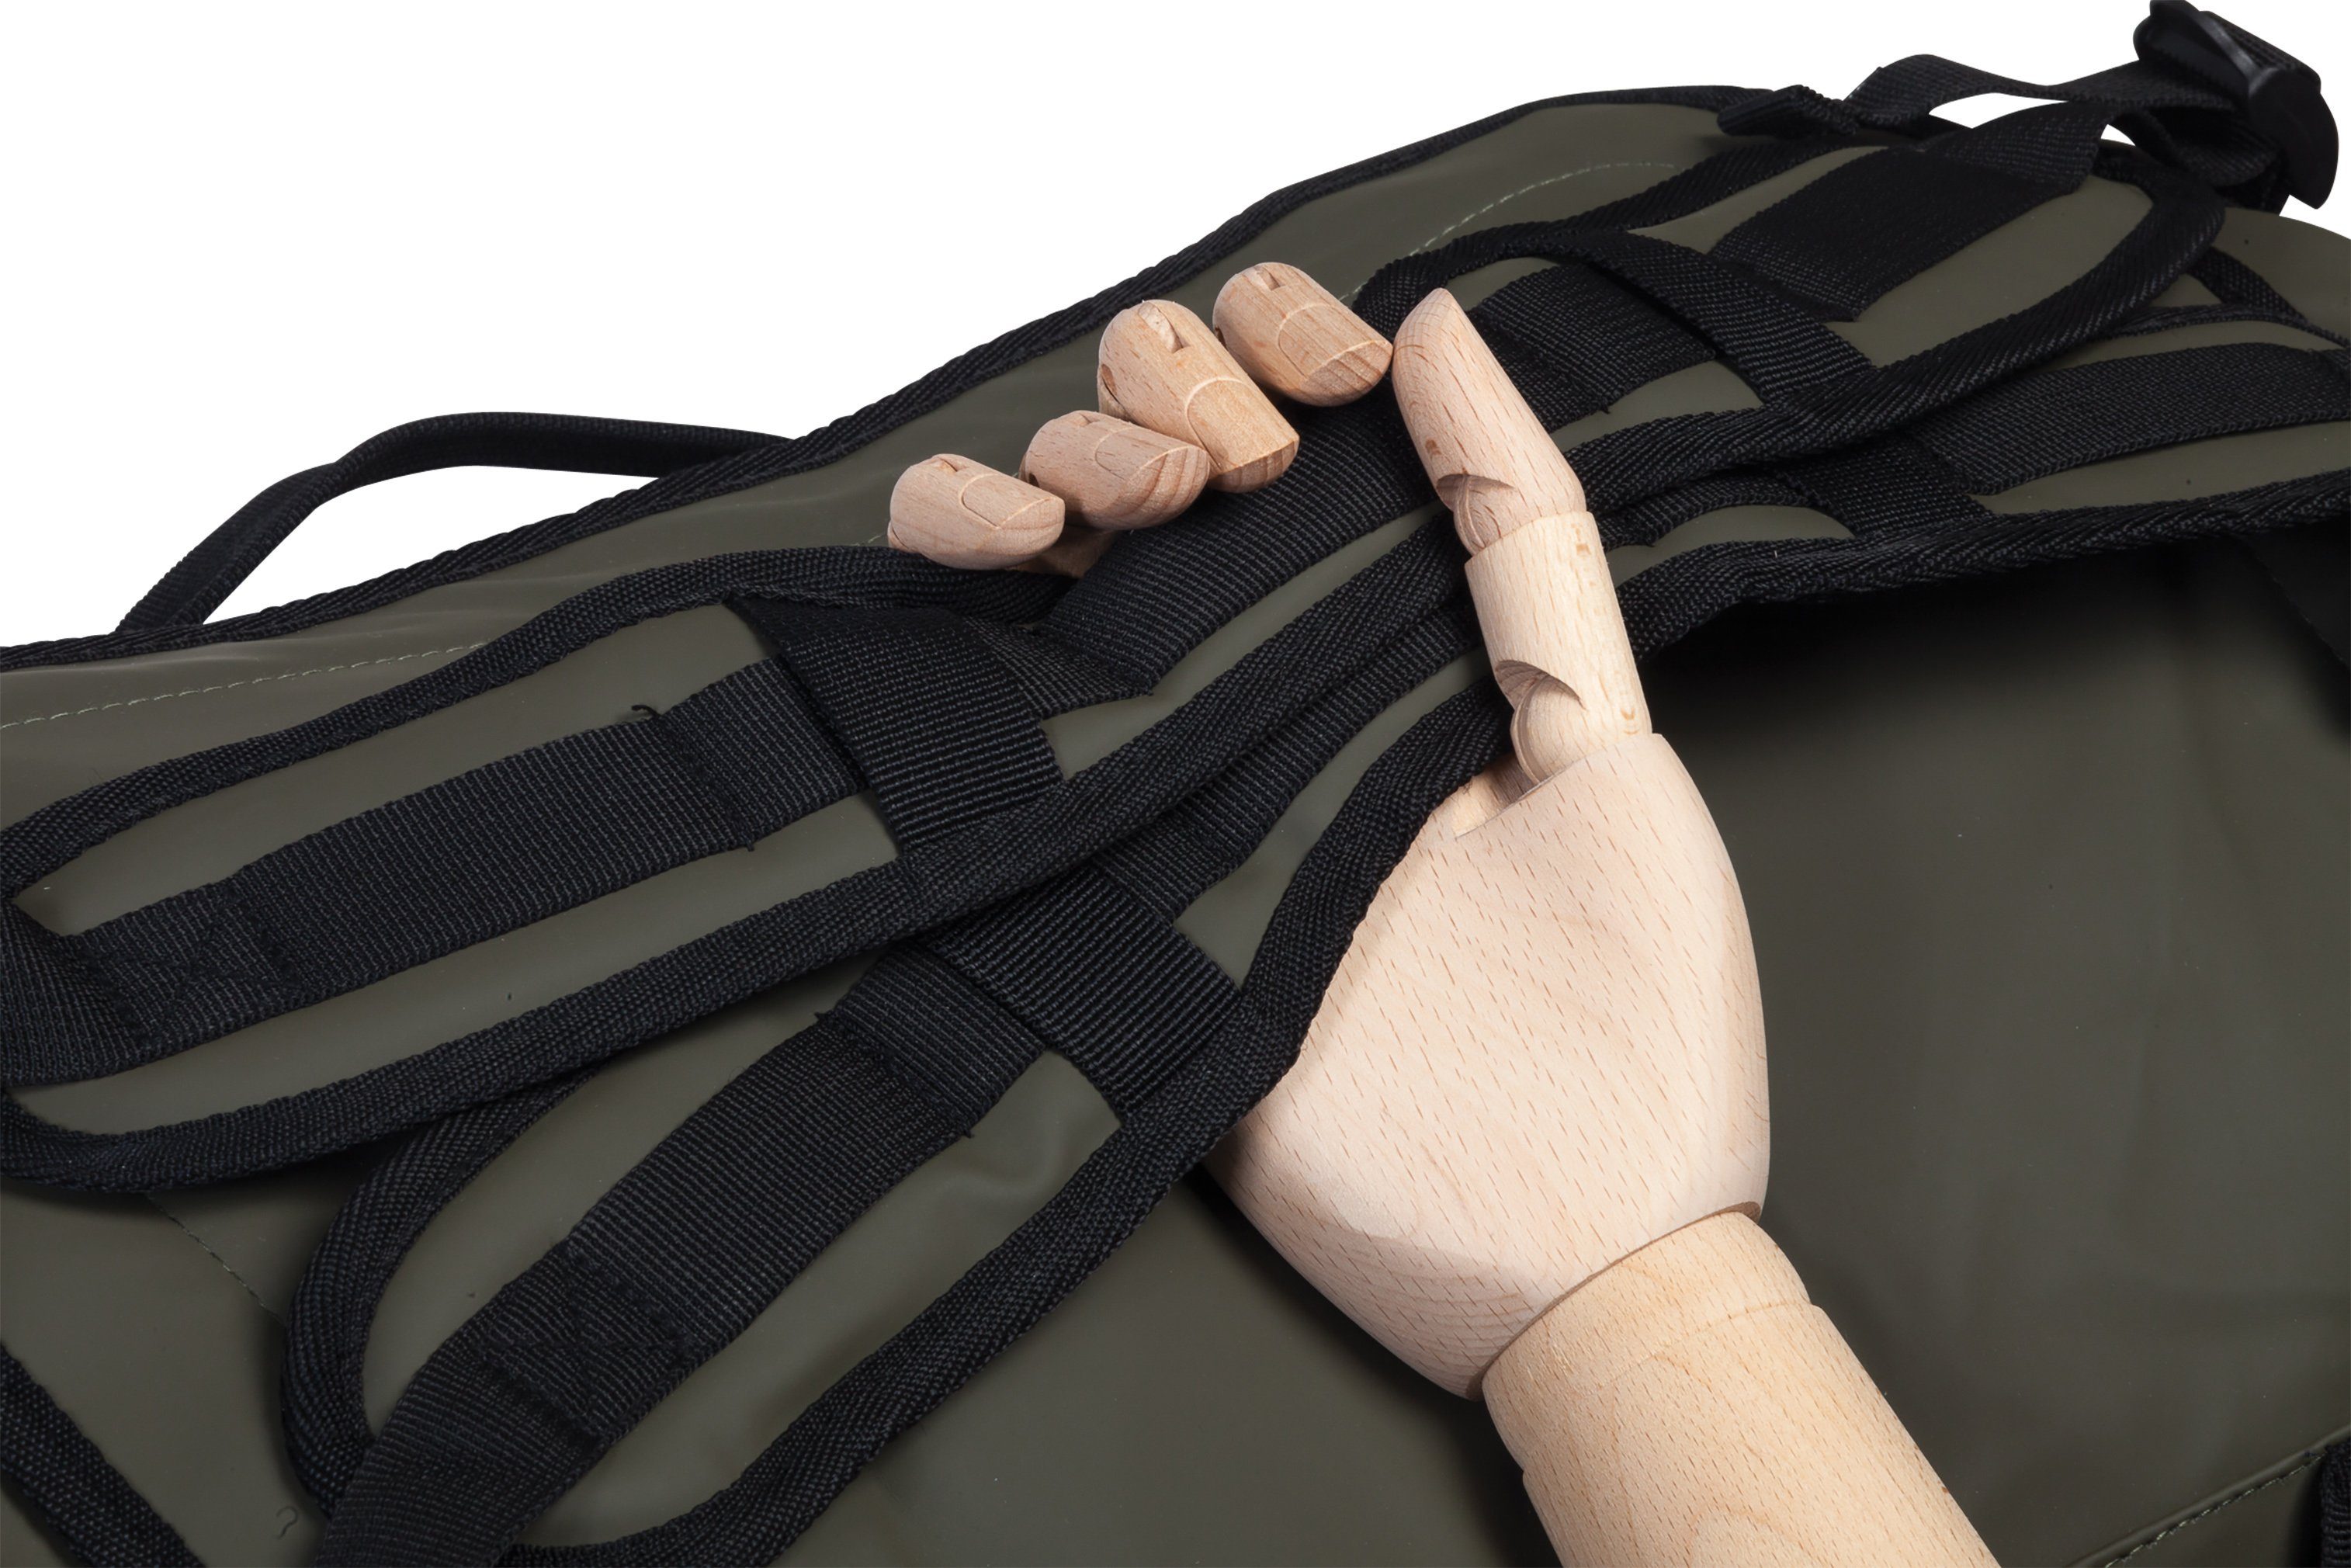 Rucksackfunktion; Reisetasche schwarz, aus wasserabweisendem mit Bench. Hydro, Material